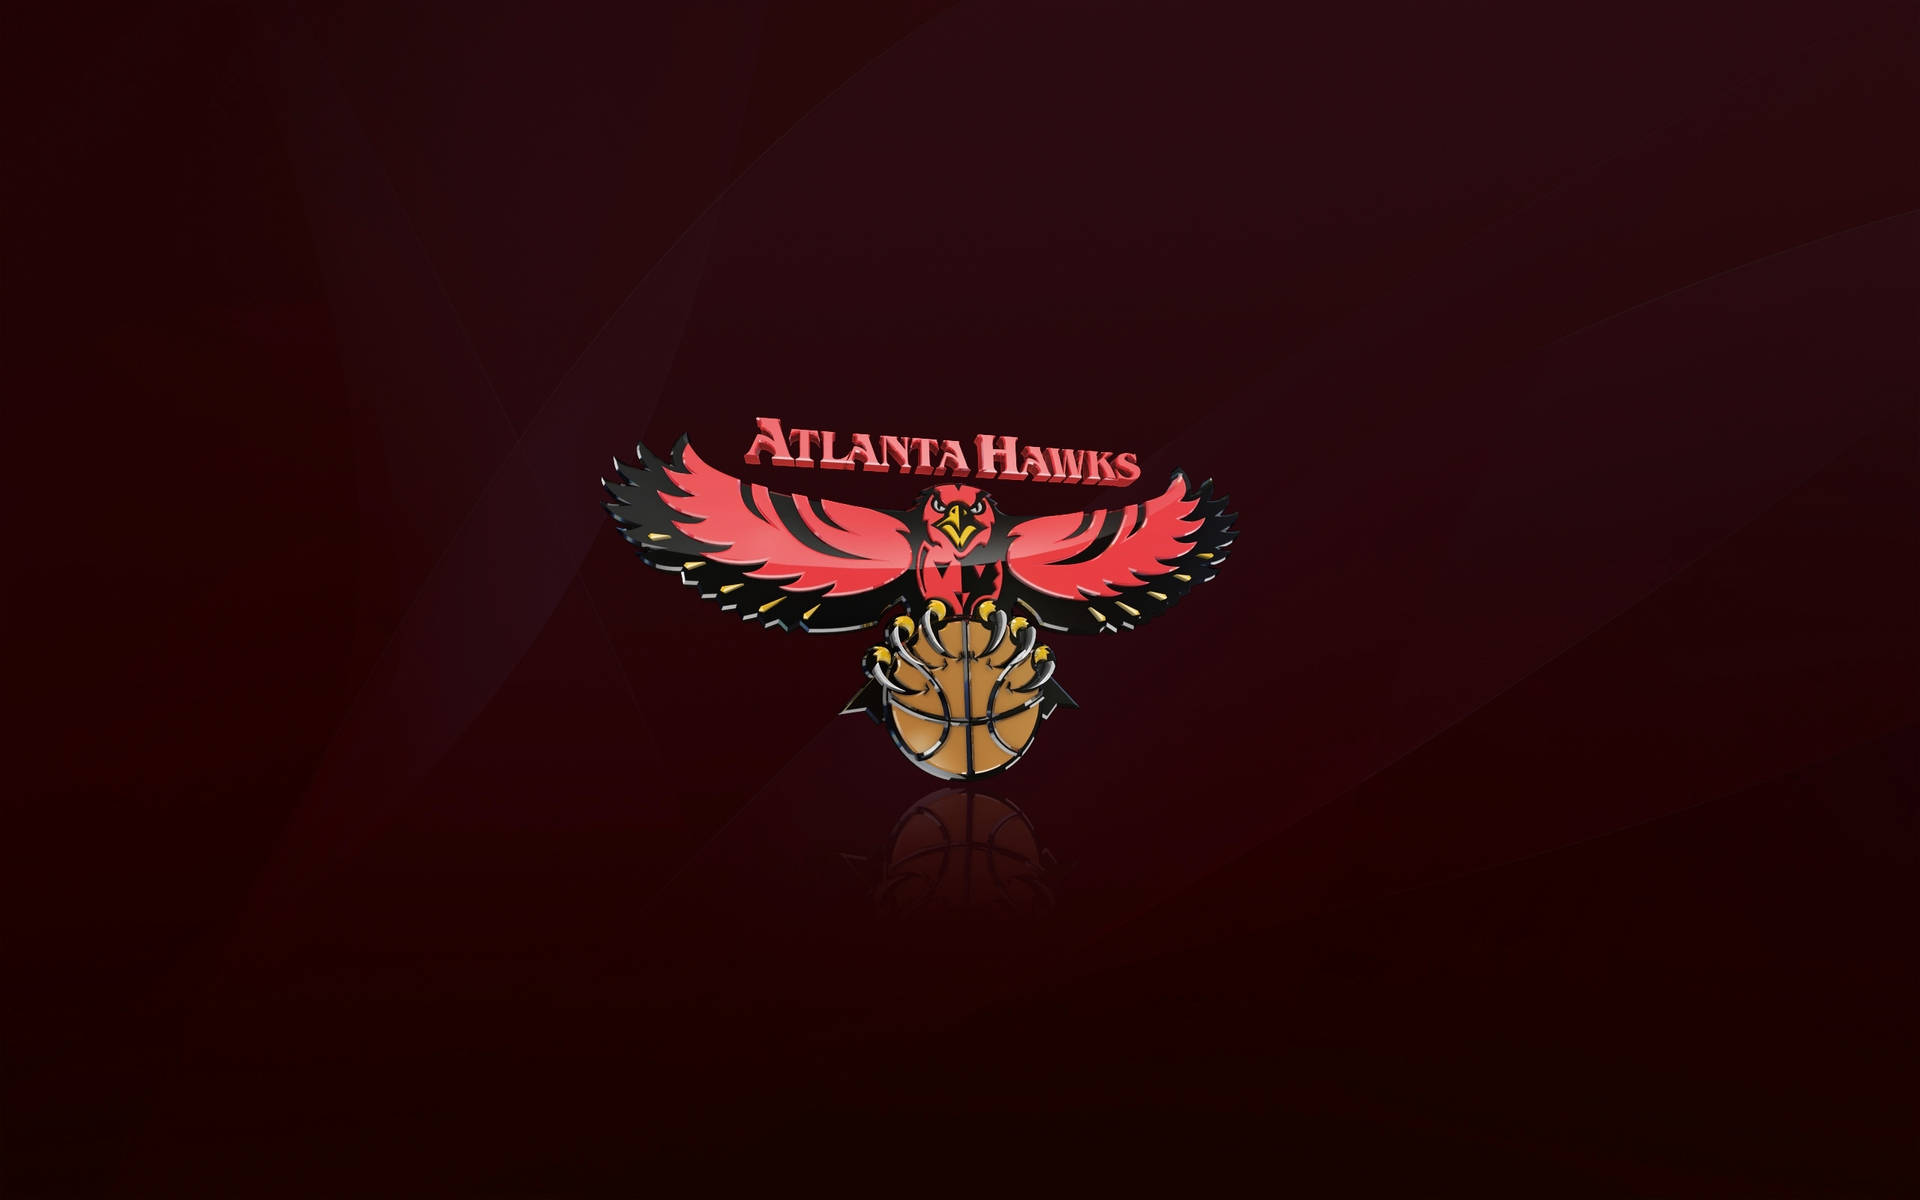 Logoen Color Granate De Los Atlanta Hawks. Fondo de pantalla